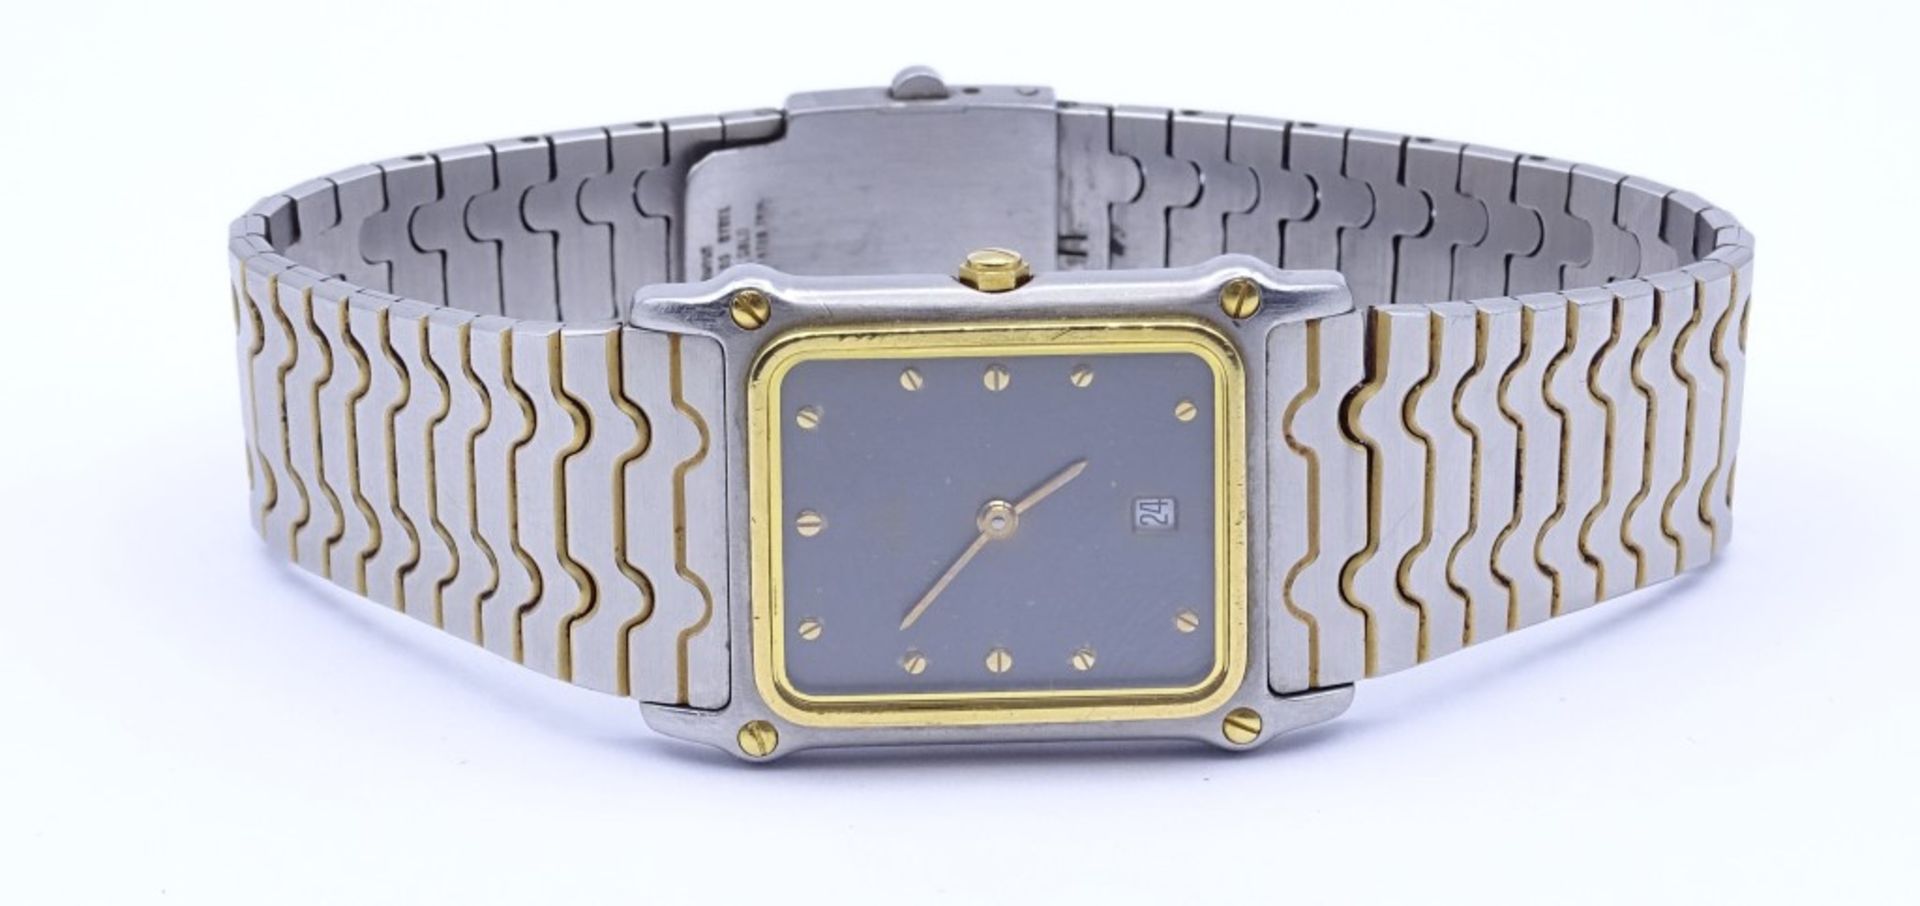 Armbanduhr "Ebel",Stahl/Gold,Quartz,Saphirglas,Gehäuse 26x23mm,Funktion nicht geprü"""" - Bild 2 aus 5